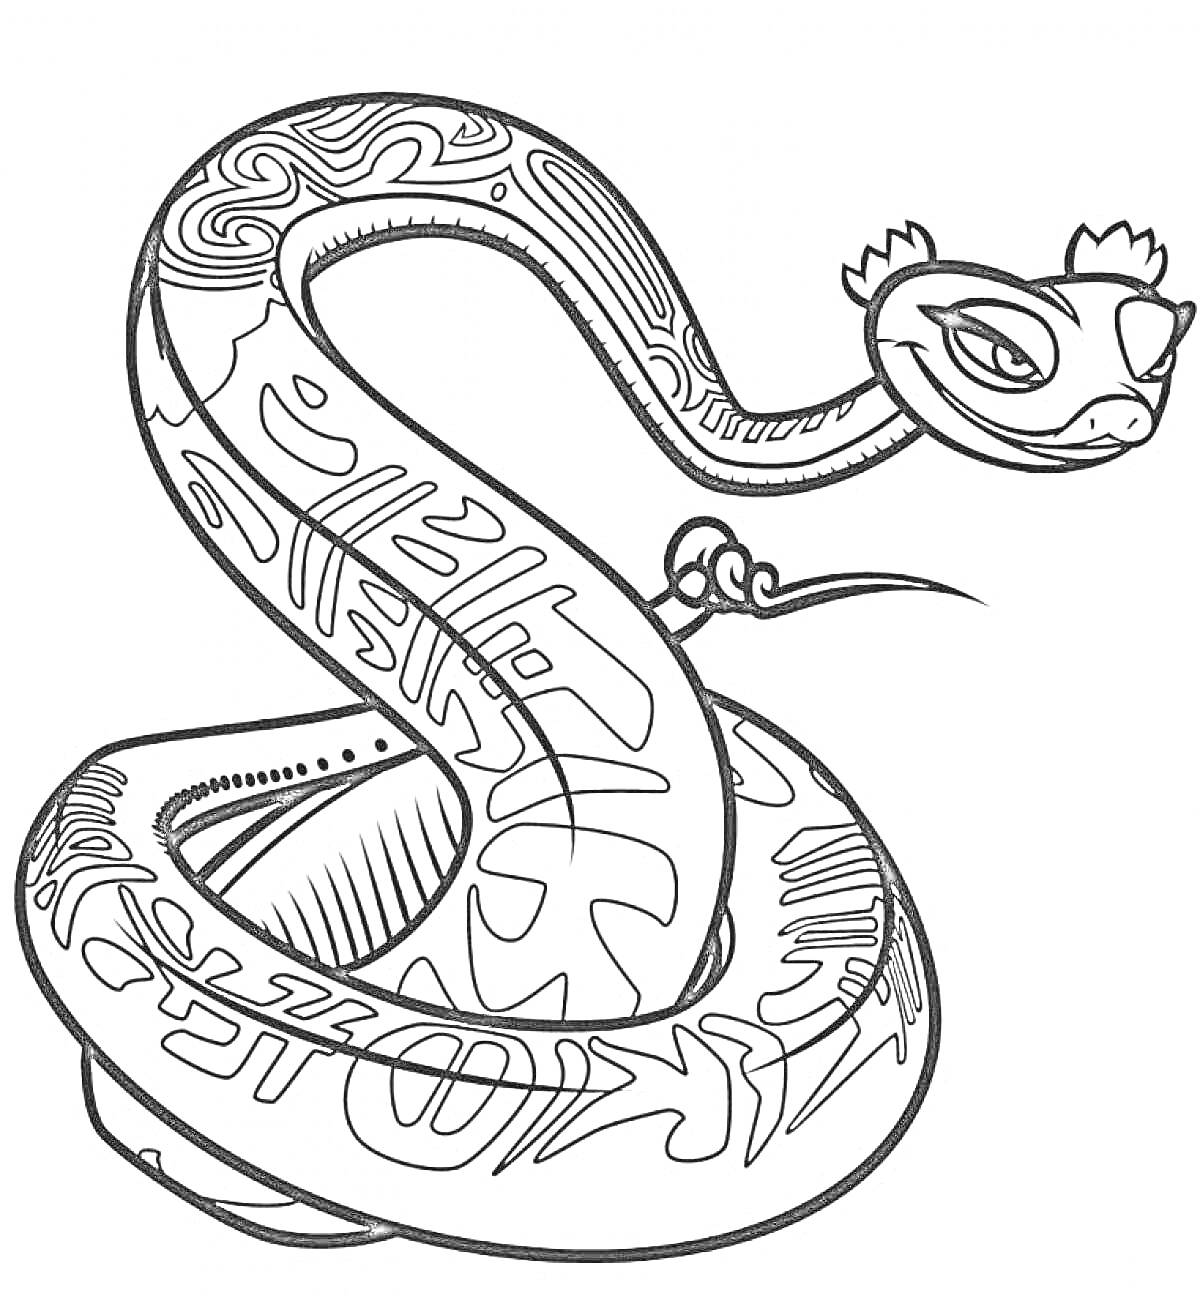 Раскраска Раскраска с изображением змеи с узорами и короной